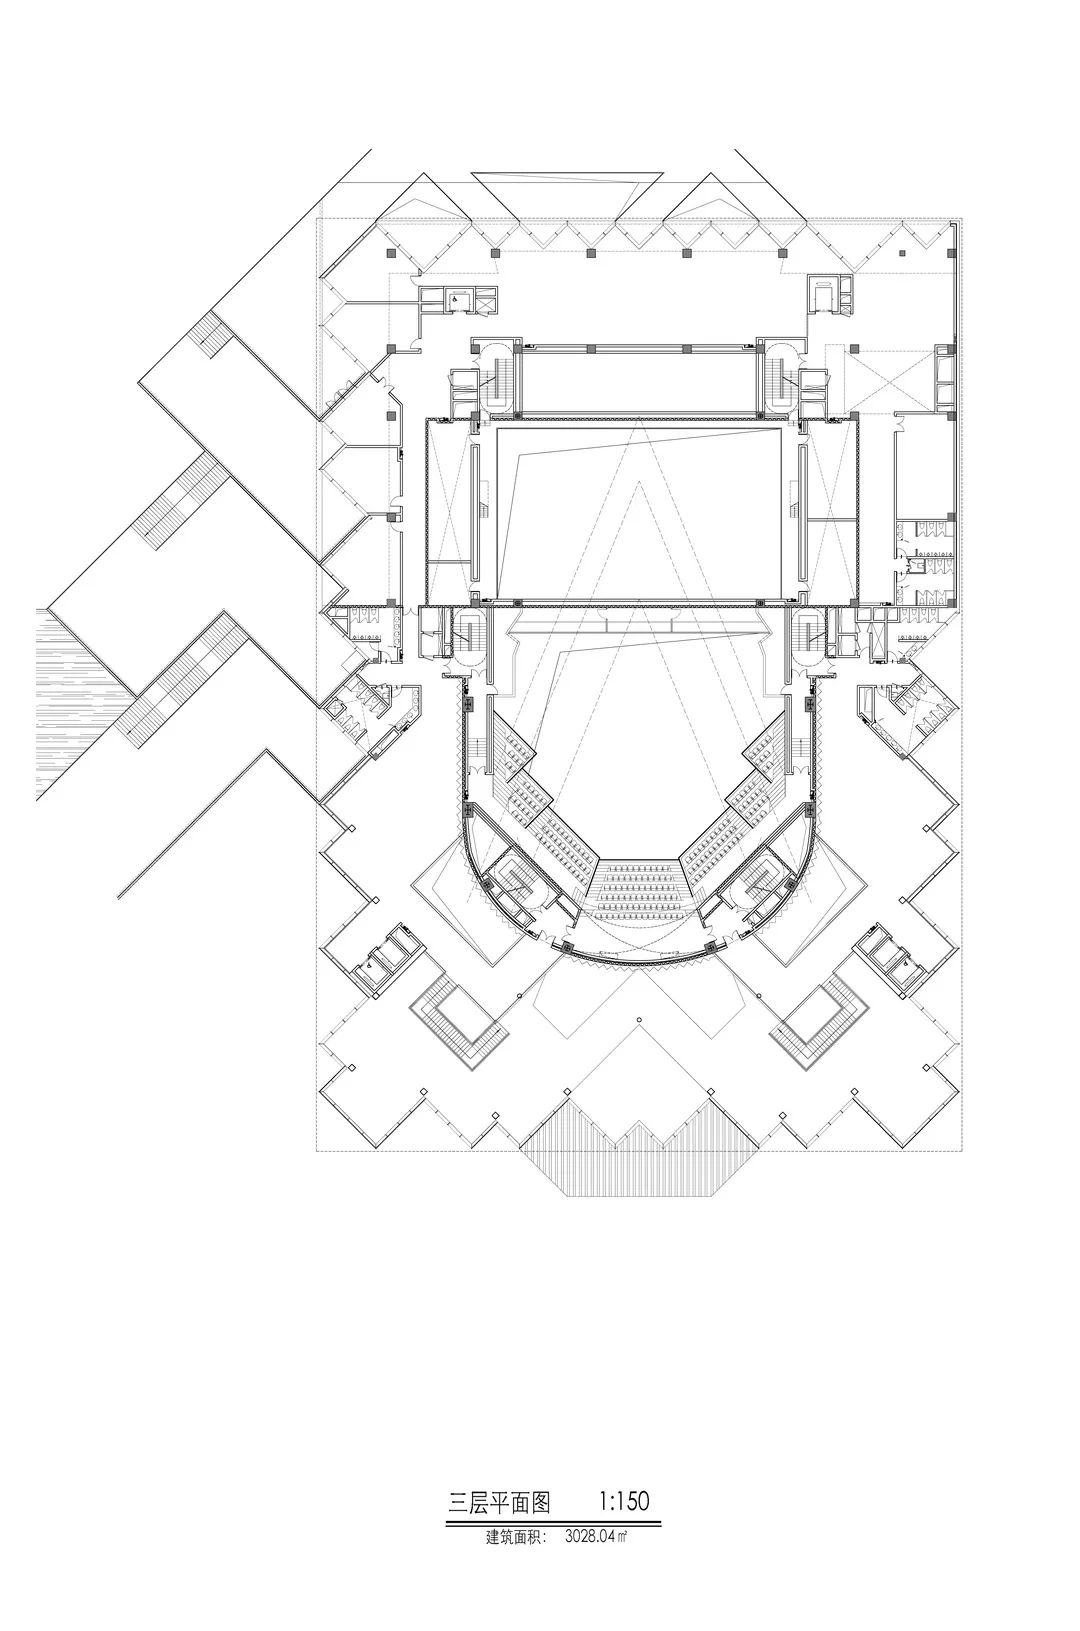 苏州民族管弦乐团音乐厅 建筑设计 / 天华设计